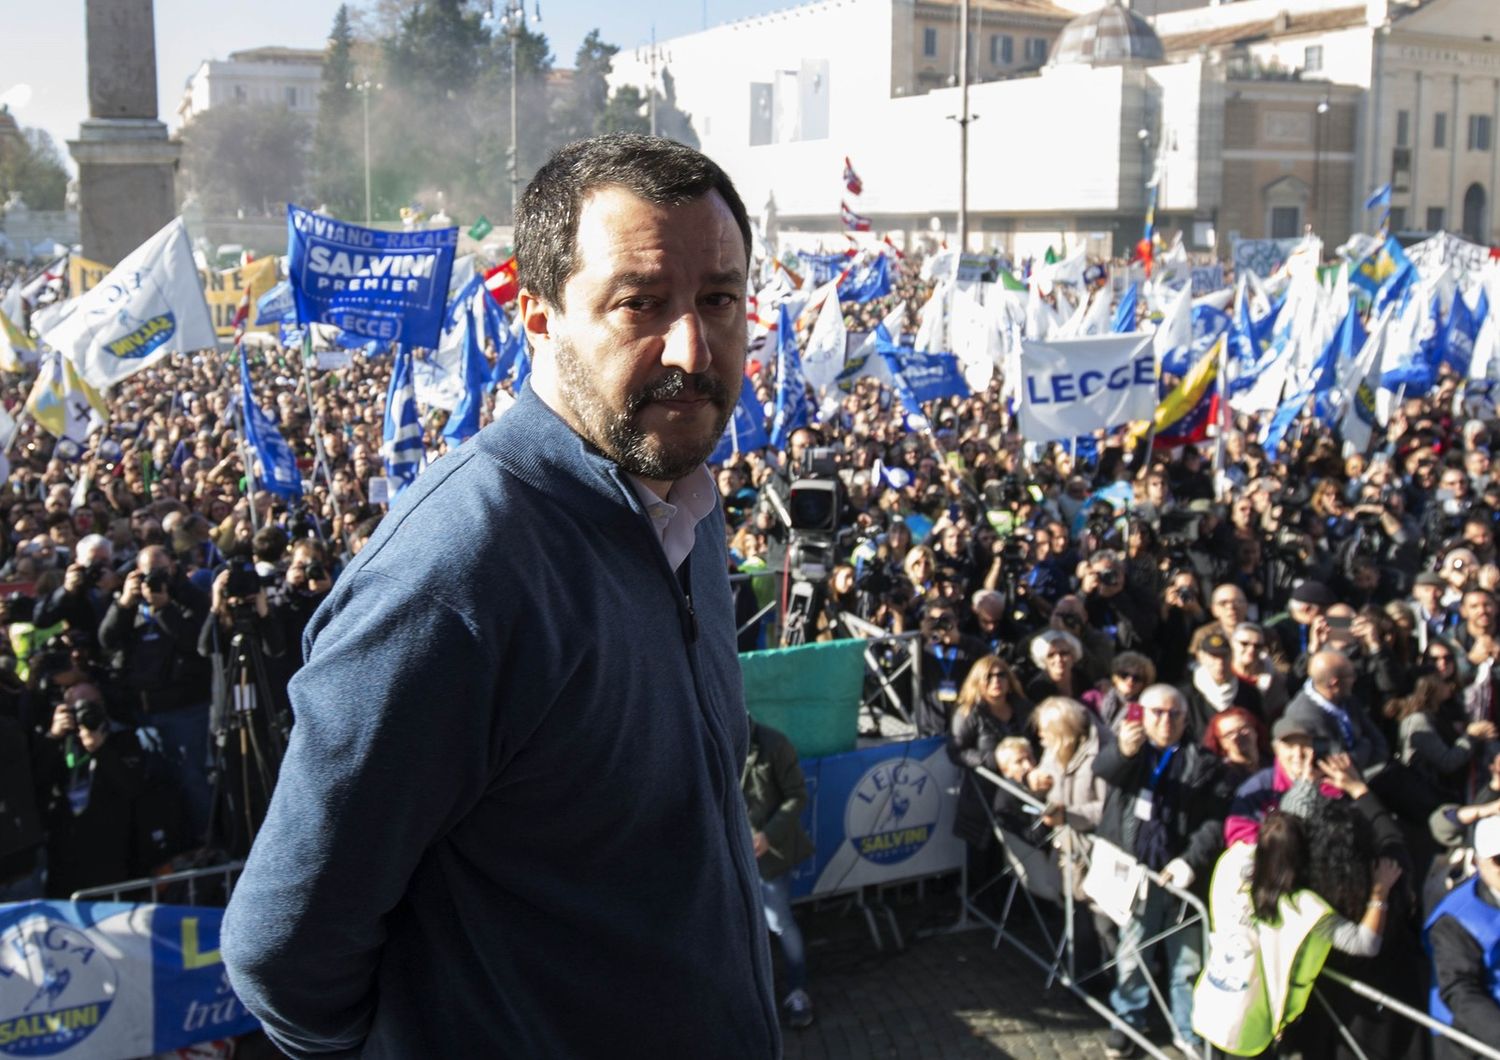 Citazioni, musiche e orizzonti della piazza di Salvini, che guarda gi&agrave; oltre la Lega